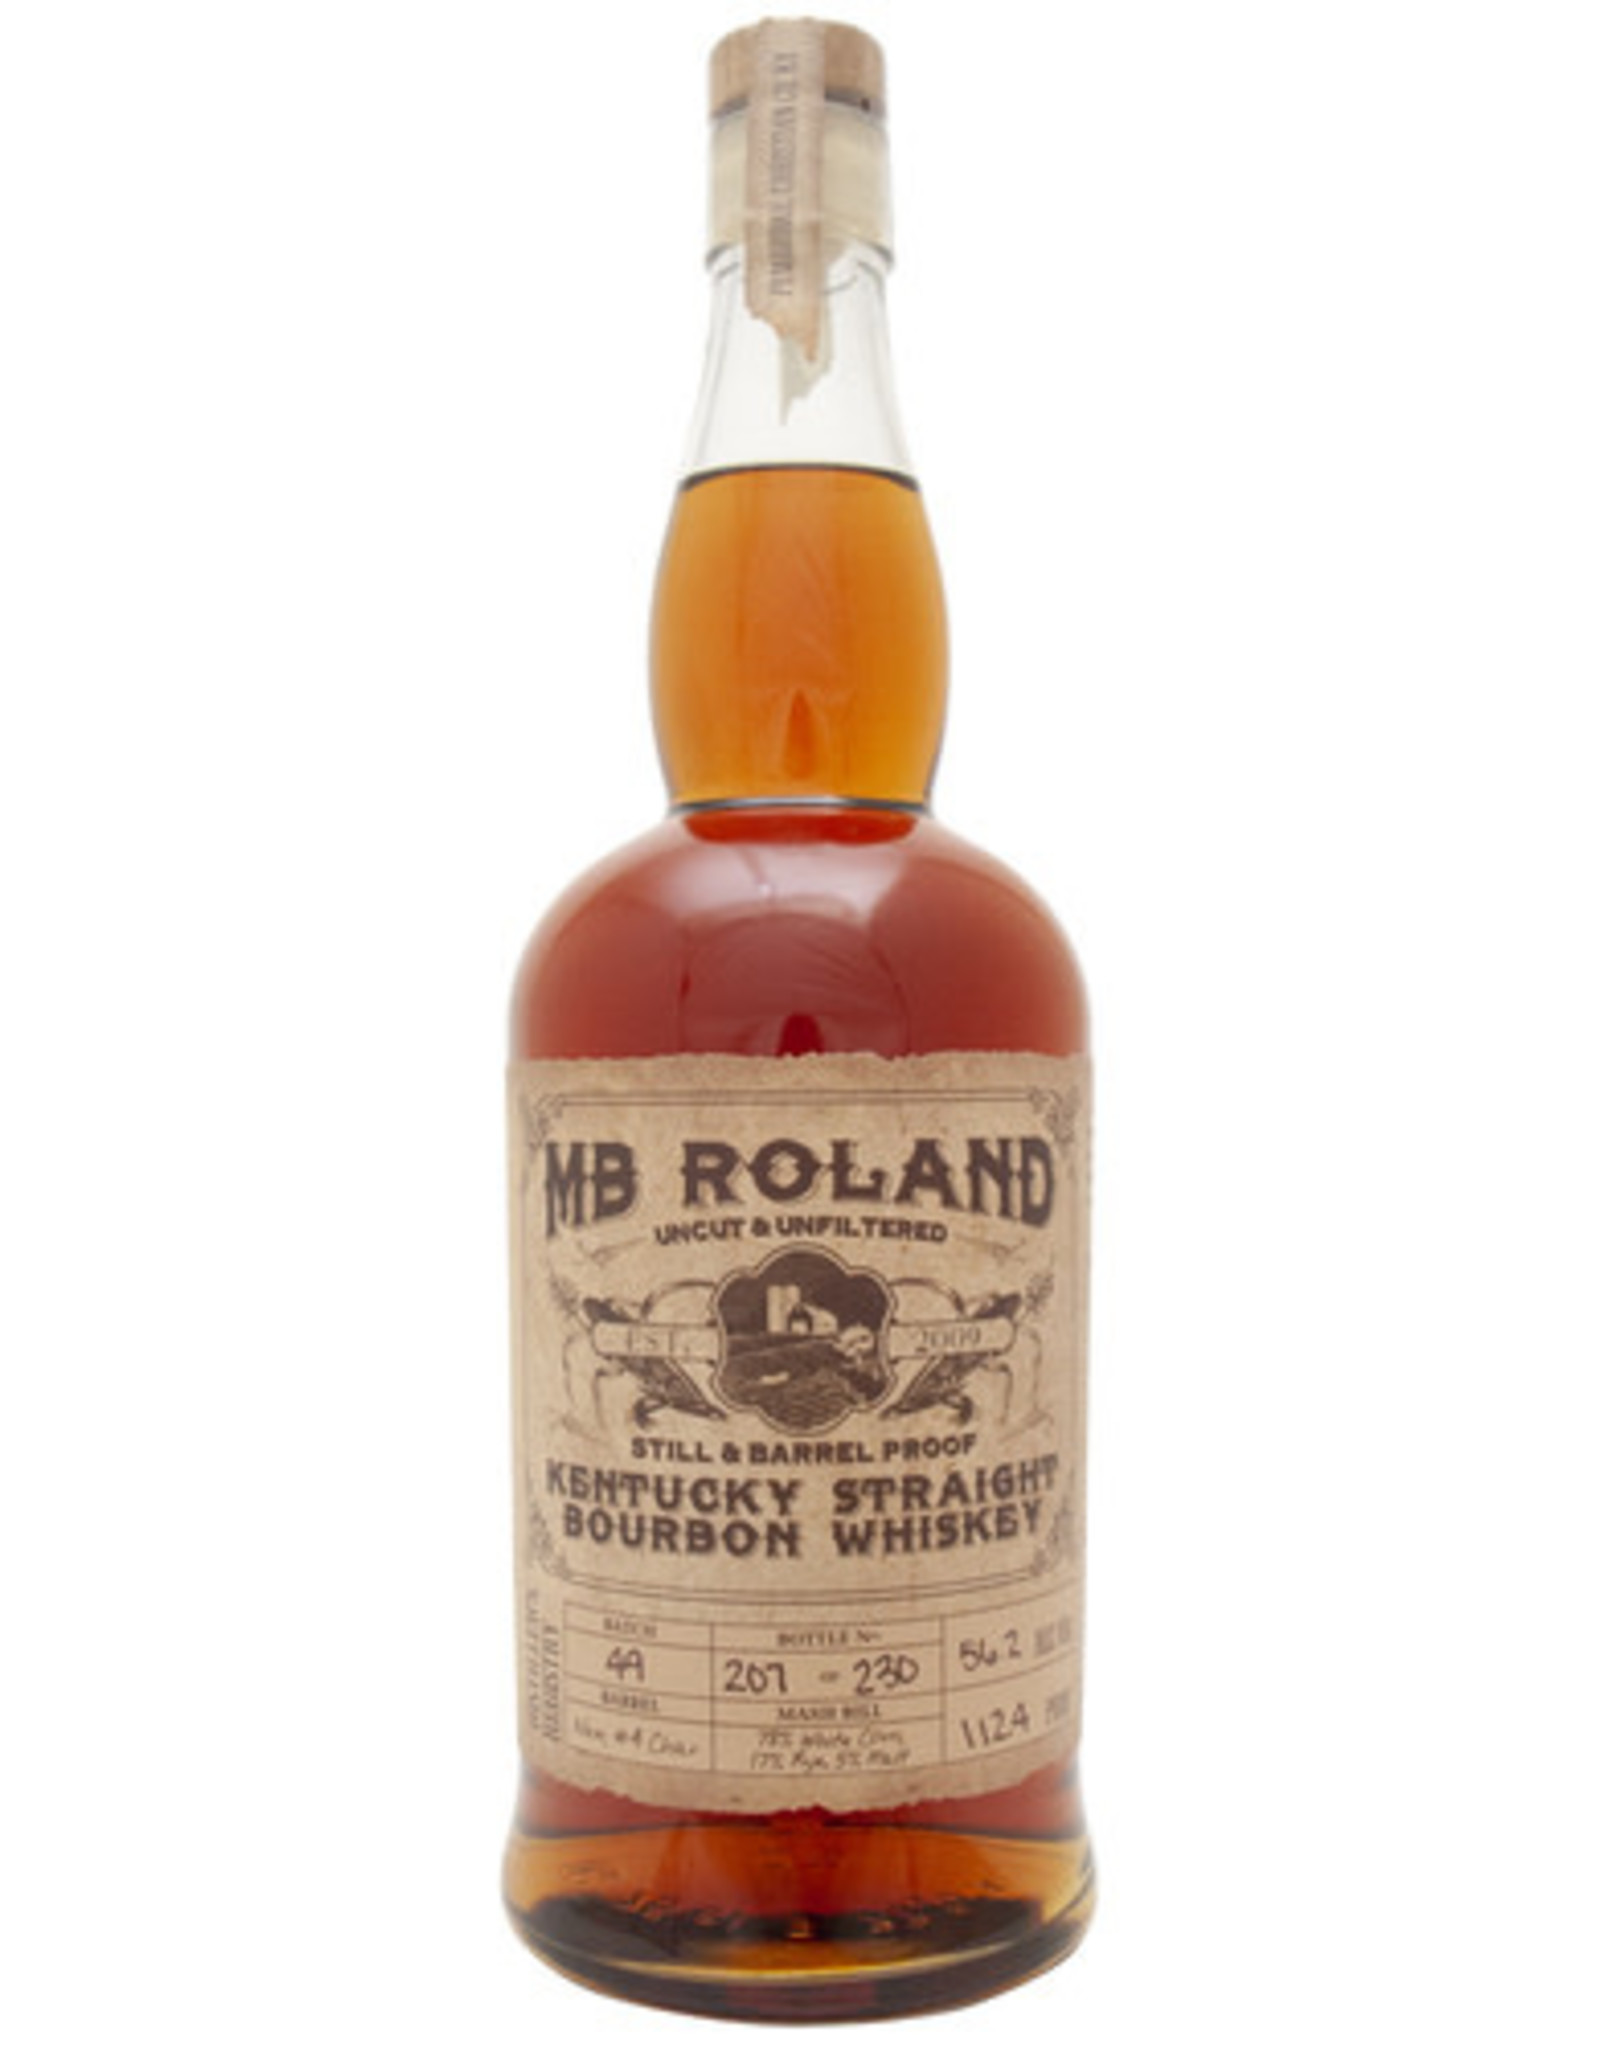 MB Roland MB Roland Kentucky Bourbon